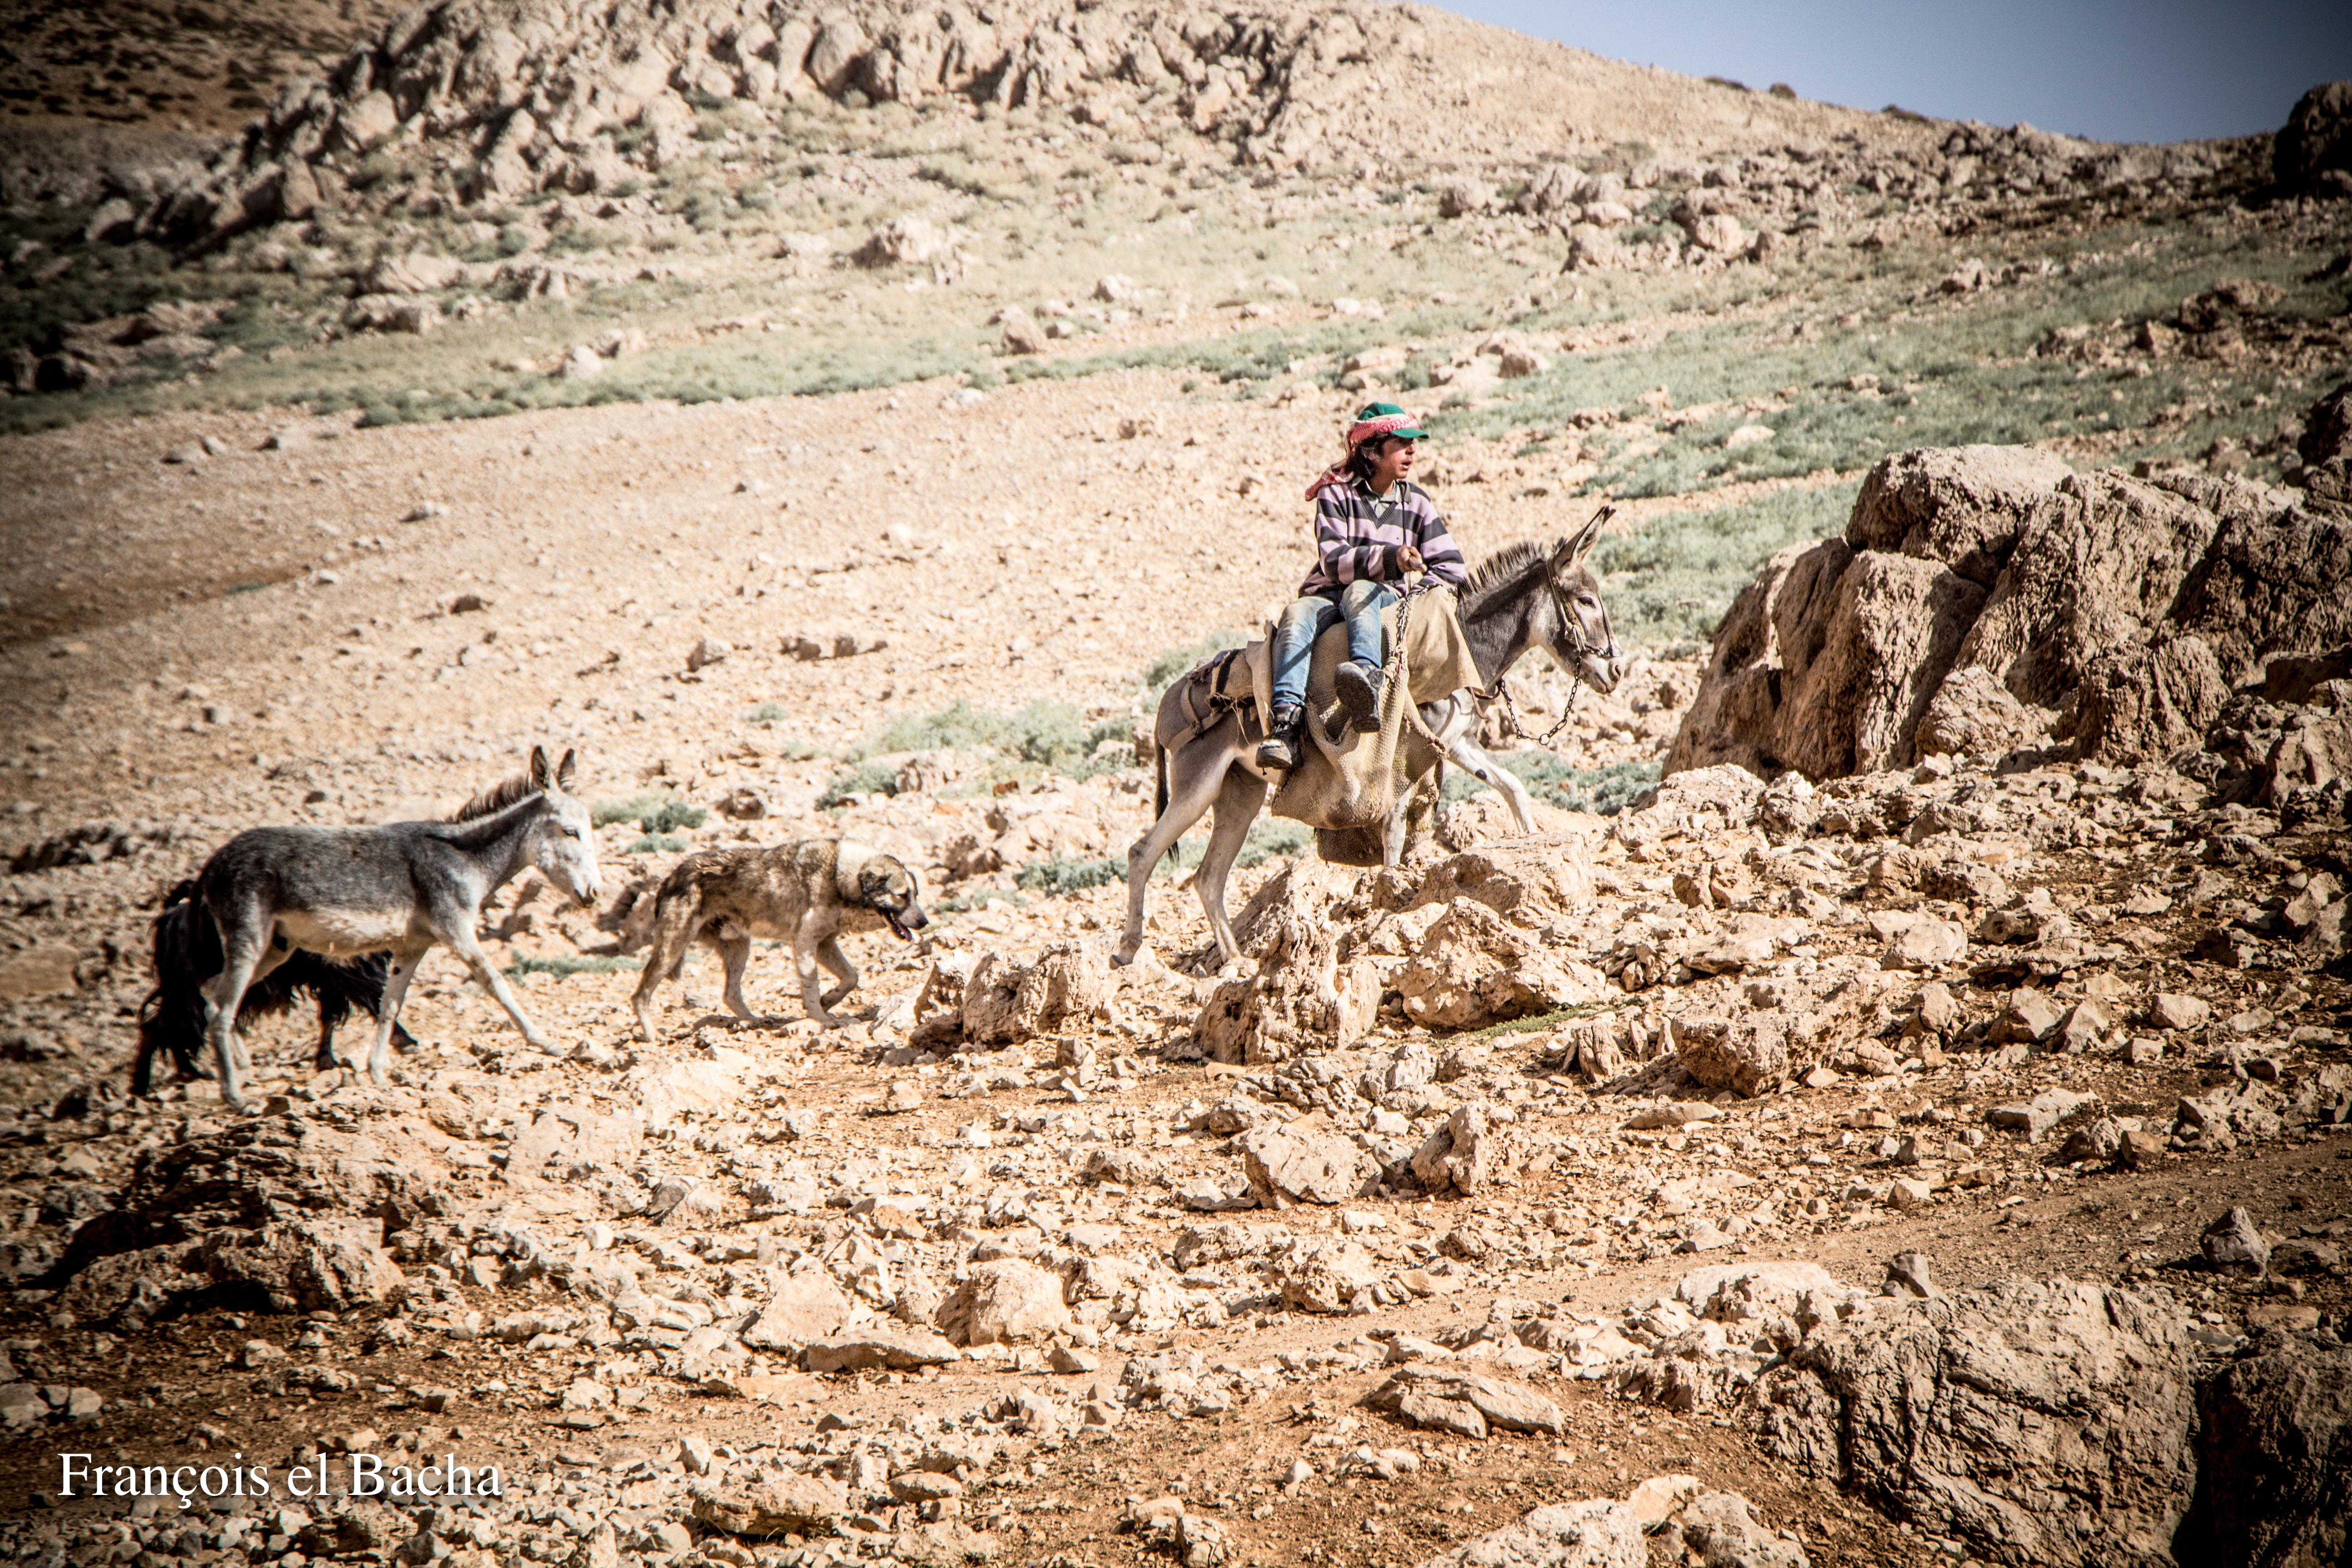 Scènes pastorales sur le chemin de randonnée menant à Kornet Saouda. Crédit Photo: François el Bacha, tous droits réservés.